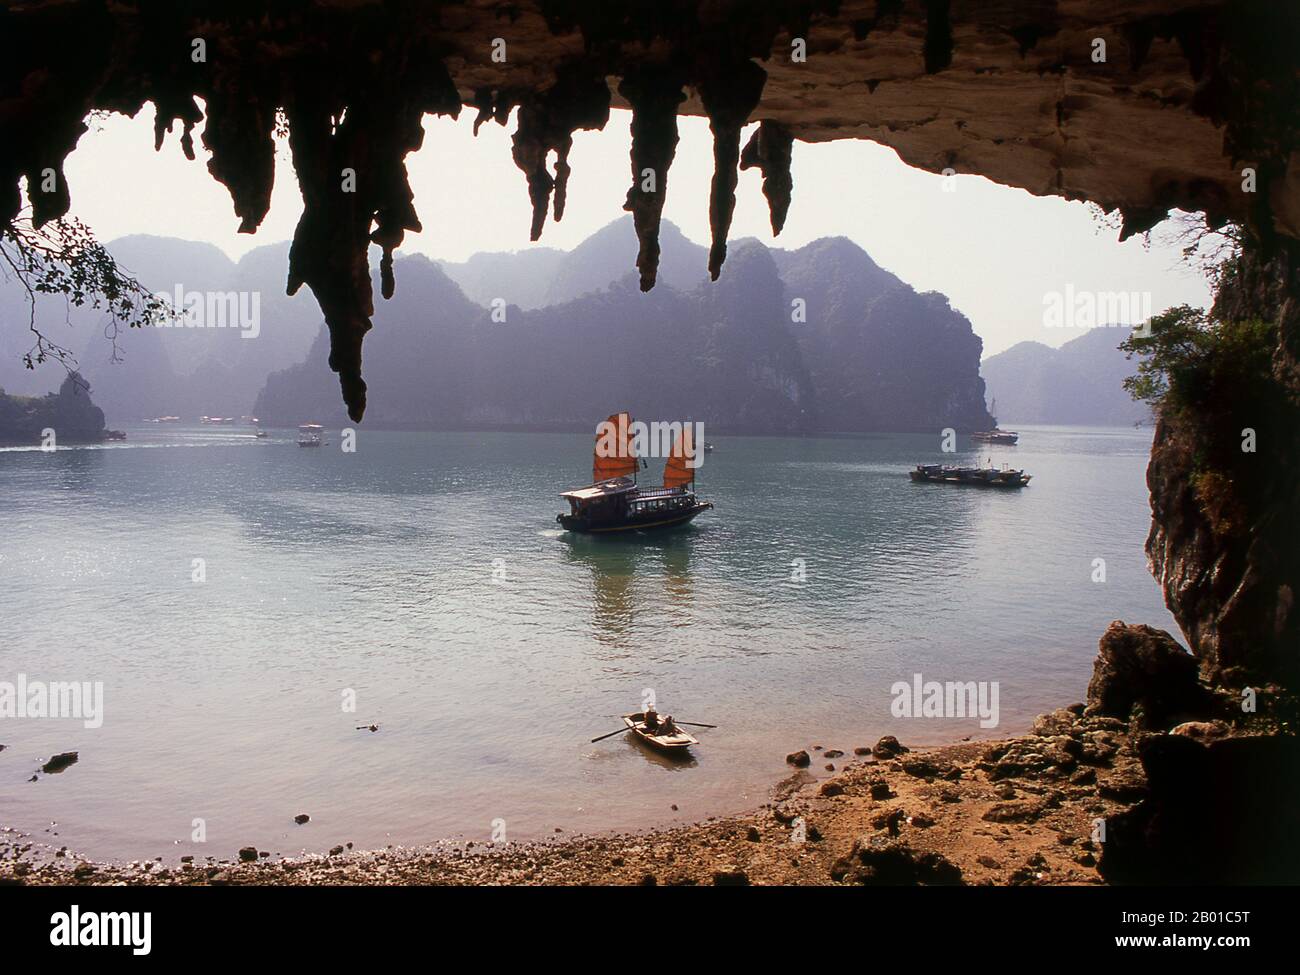 Vietnam: Ein Junk aus der Hang Bo Nau Höhle, Halong Bay, Provinz Quang Ninh. Im vietnamesischen bedeutet ha long ‘absteigenden Drachen’, und die Legende besagt, dass die Halong Bay von einem gigantischem Drachen geformt wurde, der in den Golf von Tonkin stürzte und durch das Zerschlagen seines Schwanzes Tausende von Kalksteinausbissen schuf. Geologen neigen dazu, diese Theorie zu verwerfen und argumentieren, dass die unzähligen Inseln, die sich über die Halong Bay erstrecken und sich bis in den Norden bis zur chinesischen Grenze erstrecken, das Produkt einer selektiven Erosion des Meeresbodens über Jahrtausende sind. Stockfoto